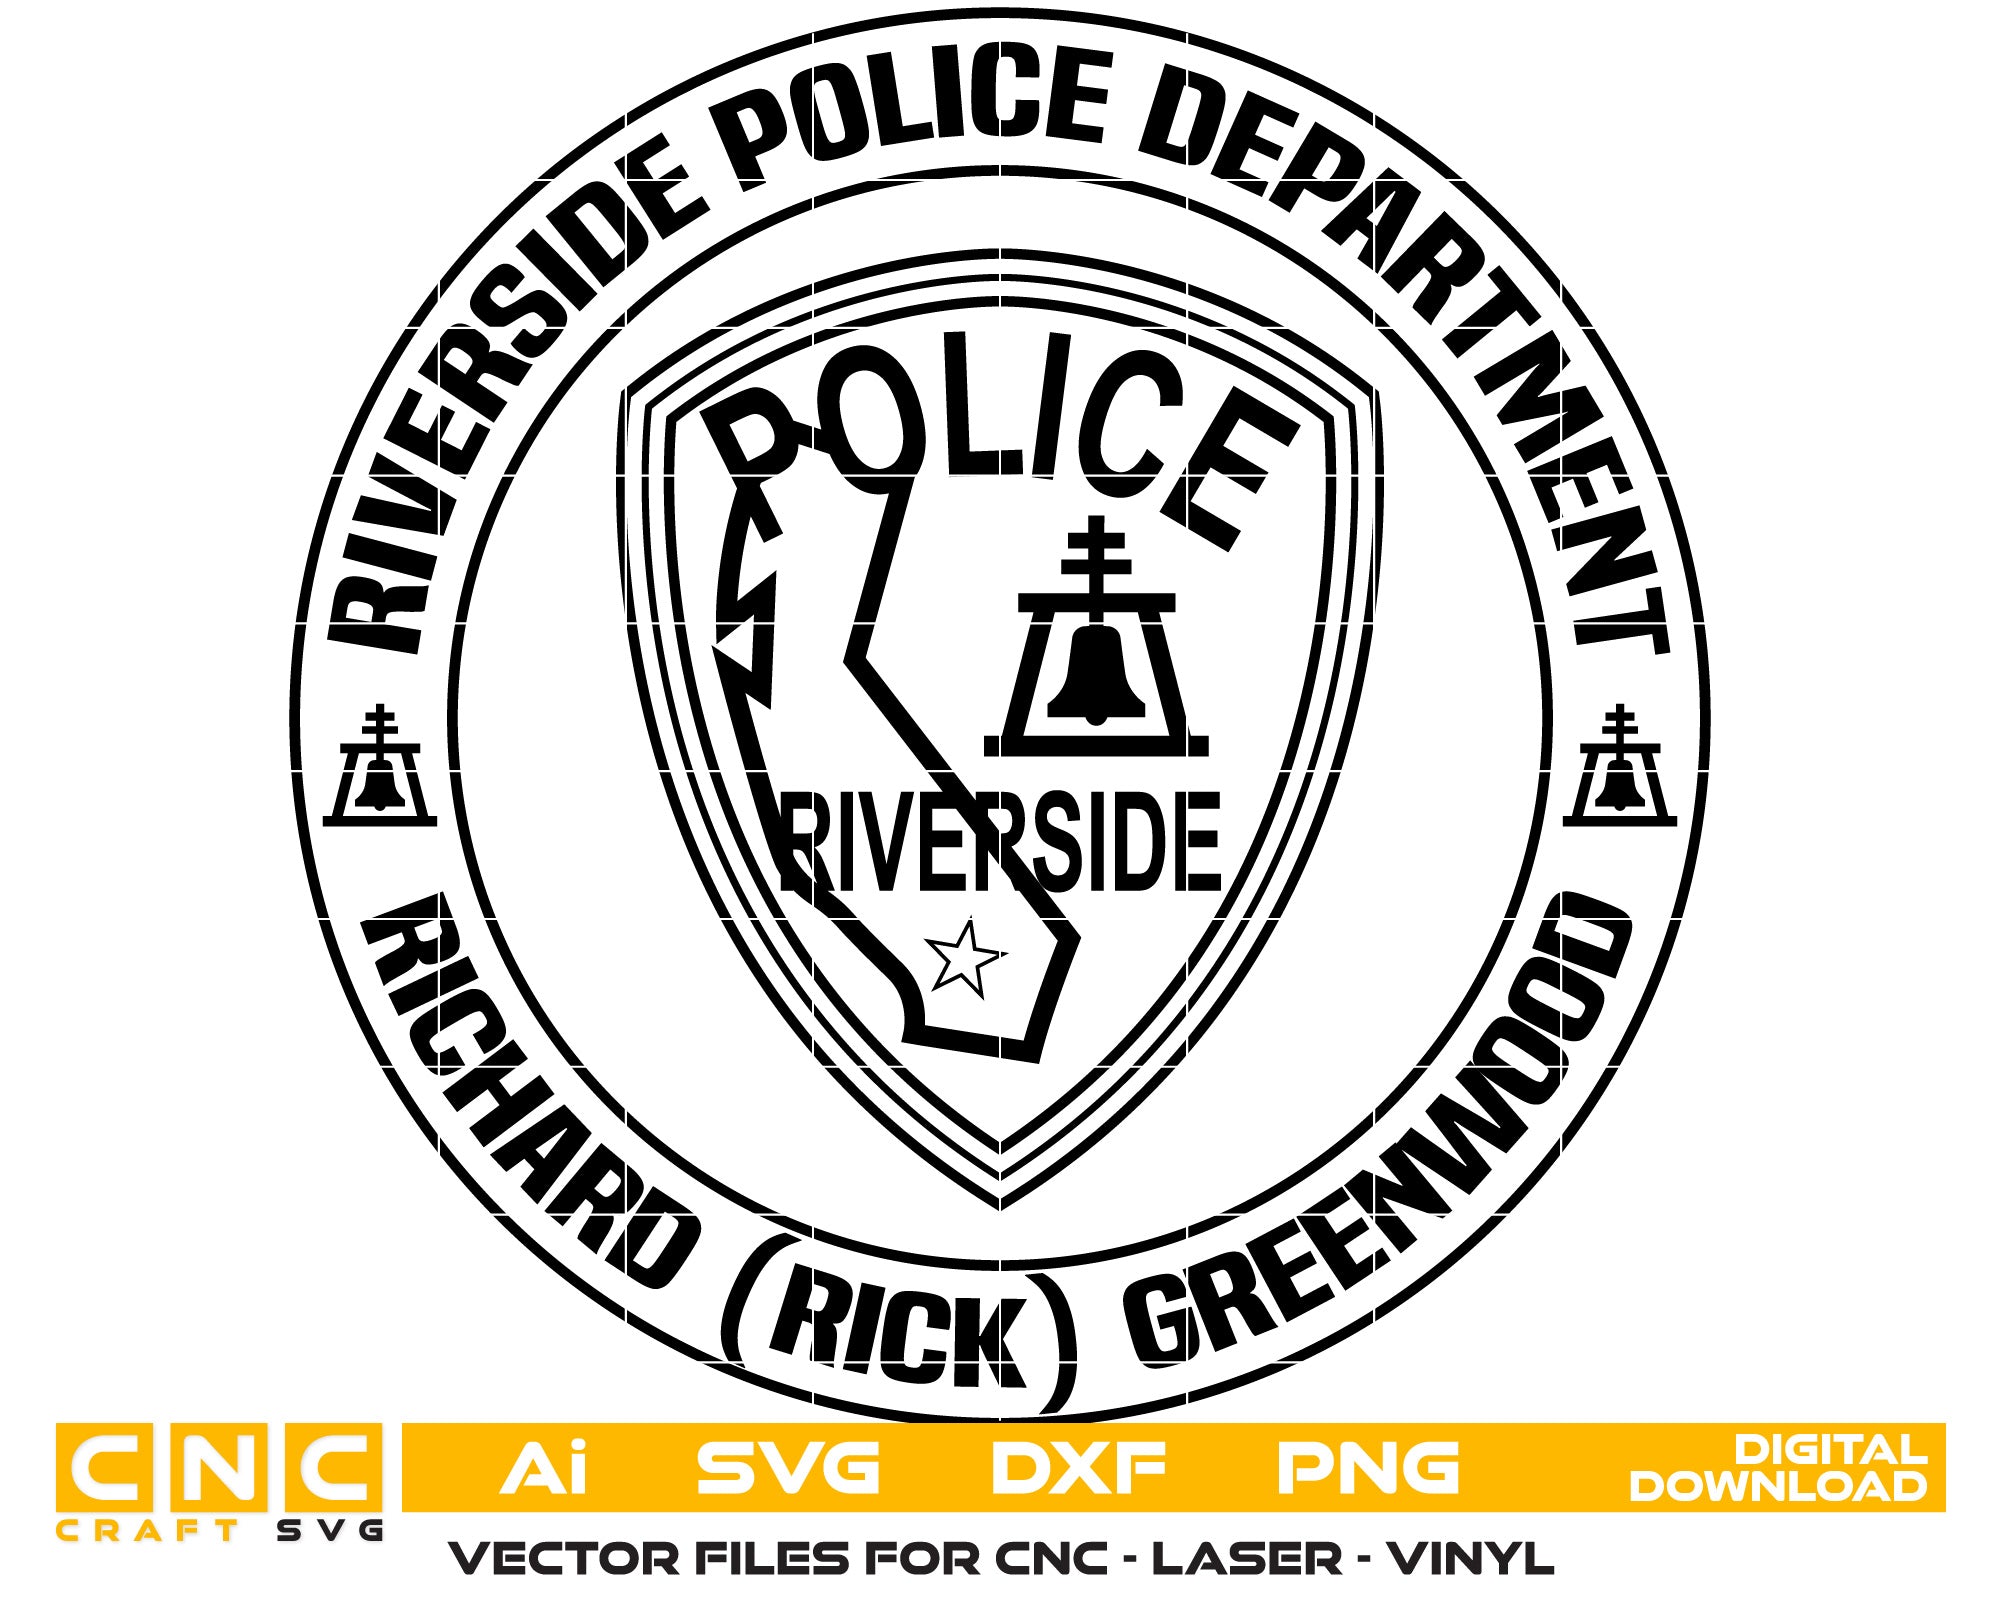 Riverside Police Dept Richard Greenwood Badge Vector Art, Ai,SVG, DXF, PNG, Digital Files